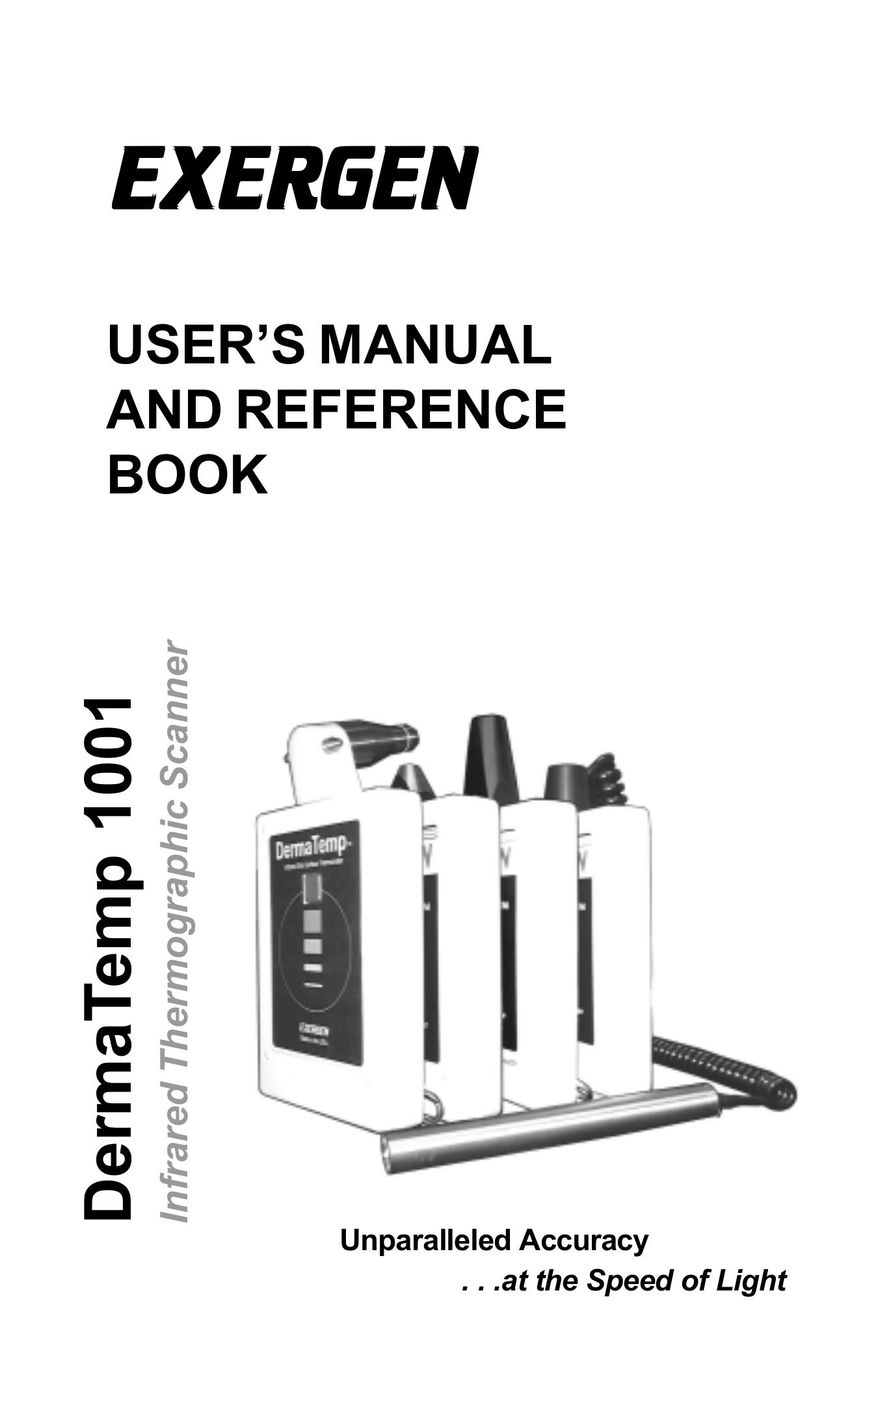 Exergen DT 1001-LT Scanner User Manual